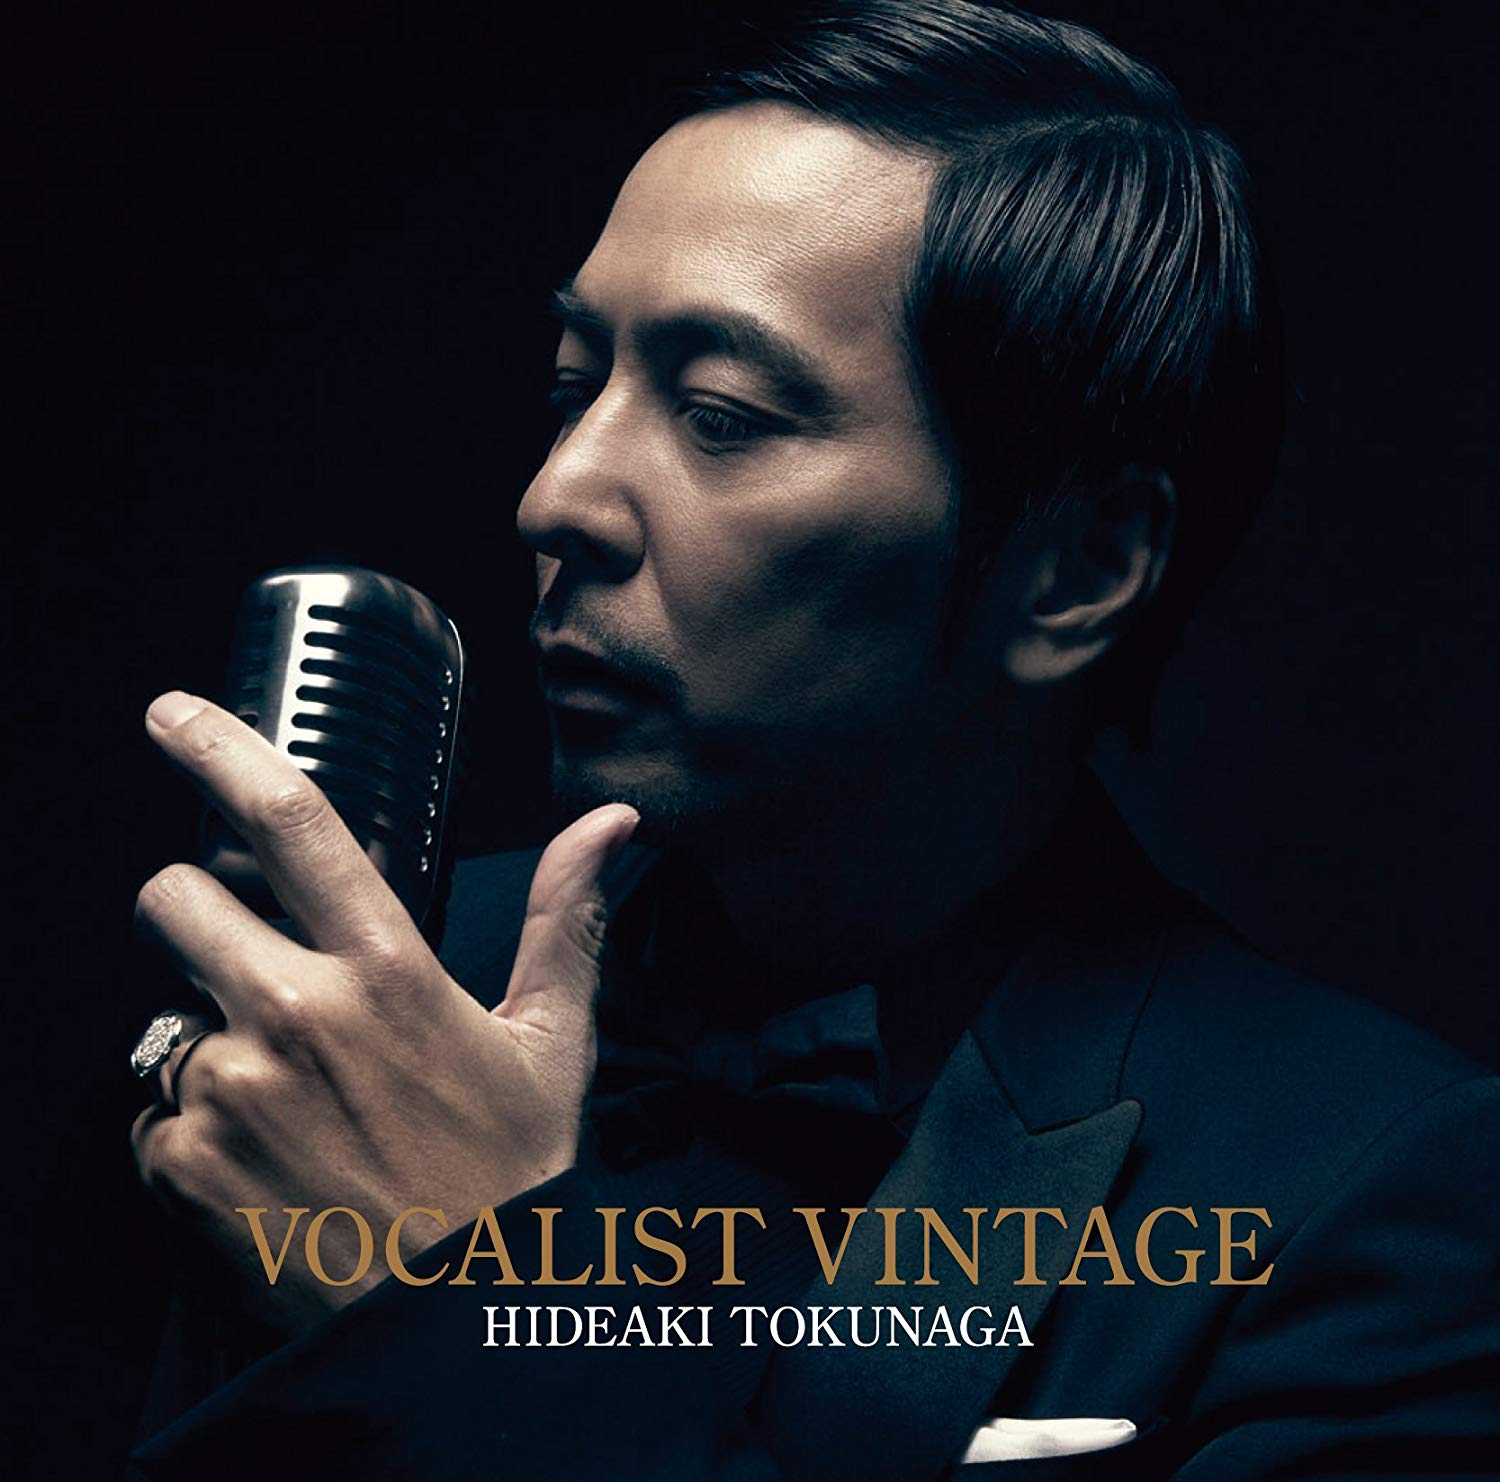 徳永英明 (Hideaki Tokunaga) - VOCALIST VINTAGE [Mora FLAC 24bit/48kHz]